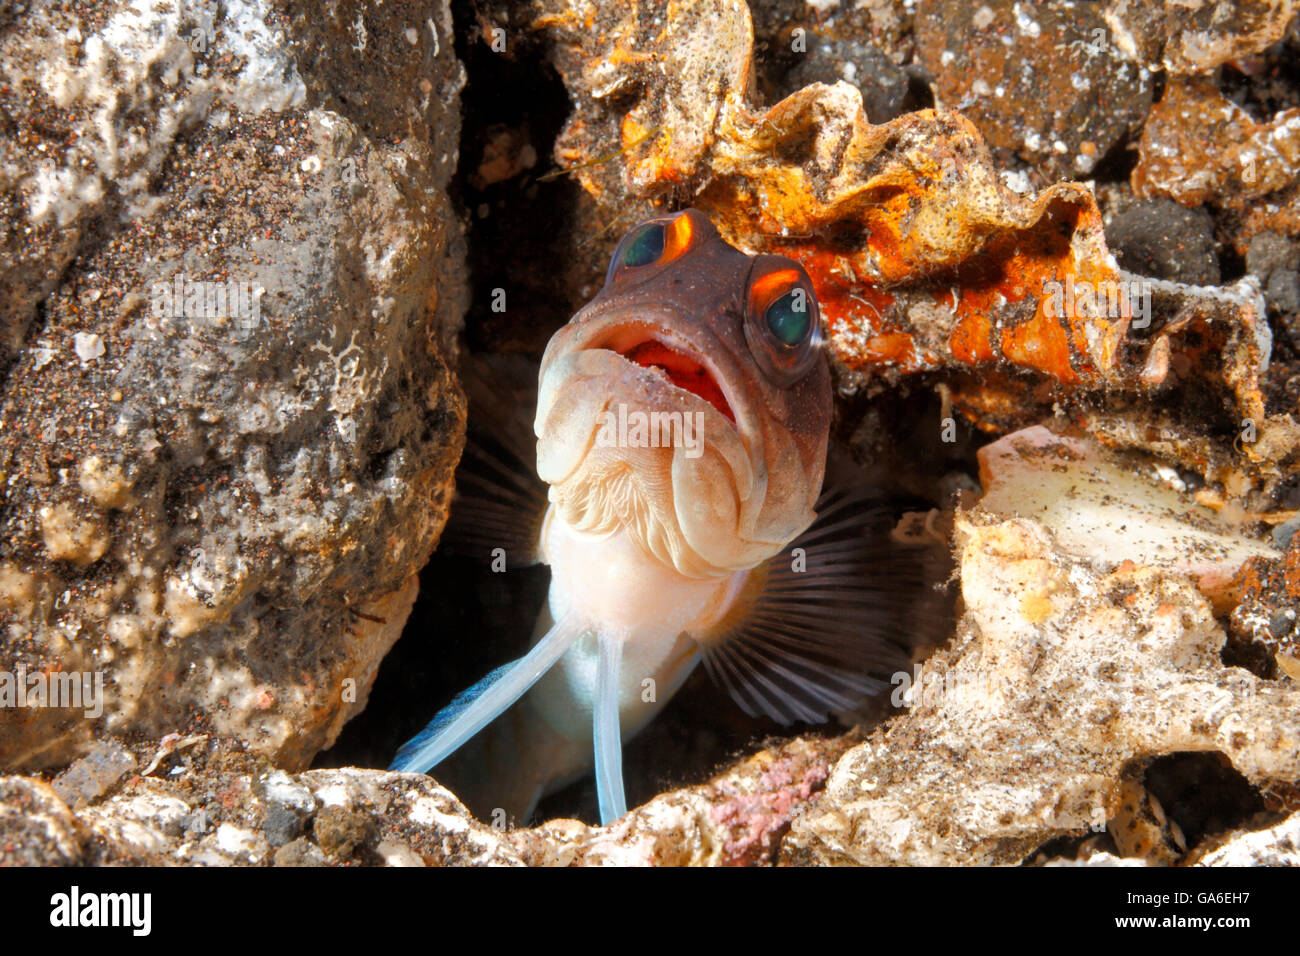 Gelbbarren-Jawfish, auch bekannt als Gold-Specs-Jawfish, Opistognathus randalli, späht aus dem Bau heraus. Tulamben, Bali, Indonesien Stockfoto